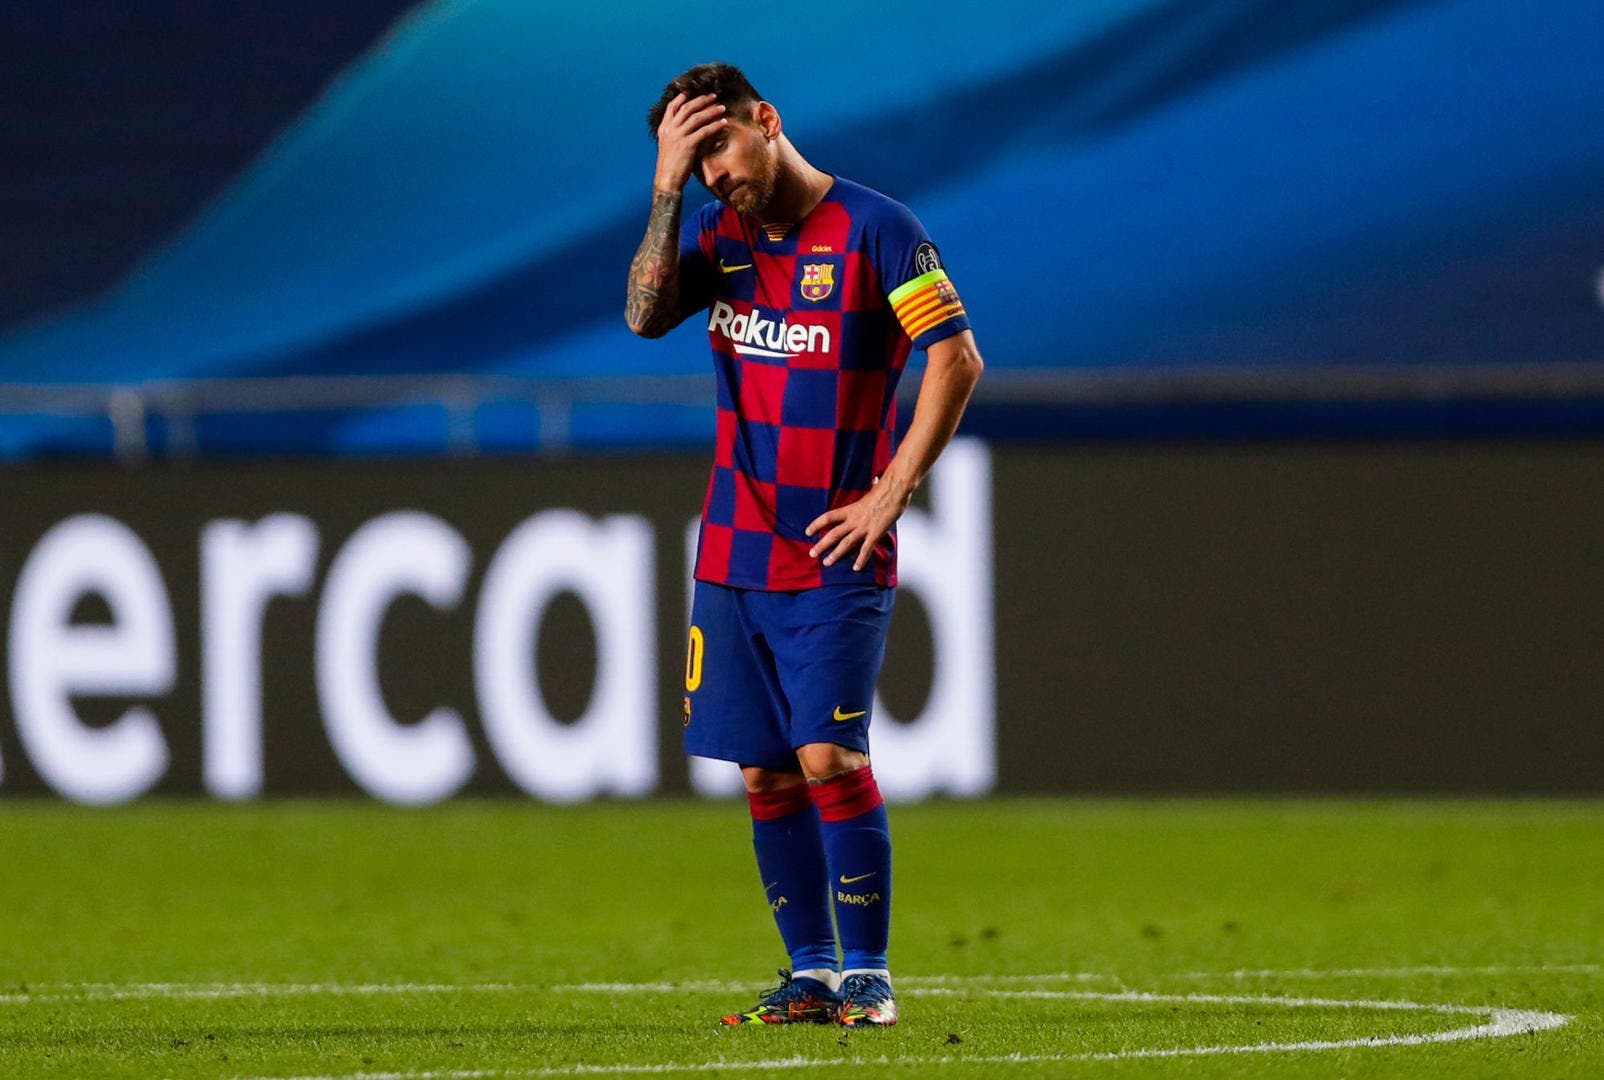 Possible départ de Lionel Messi : Le Barça sort publiquement du silence